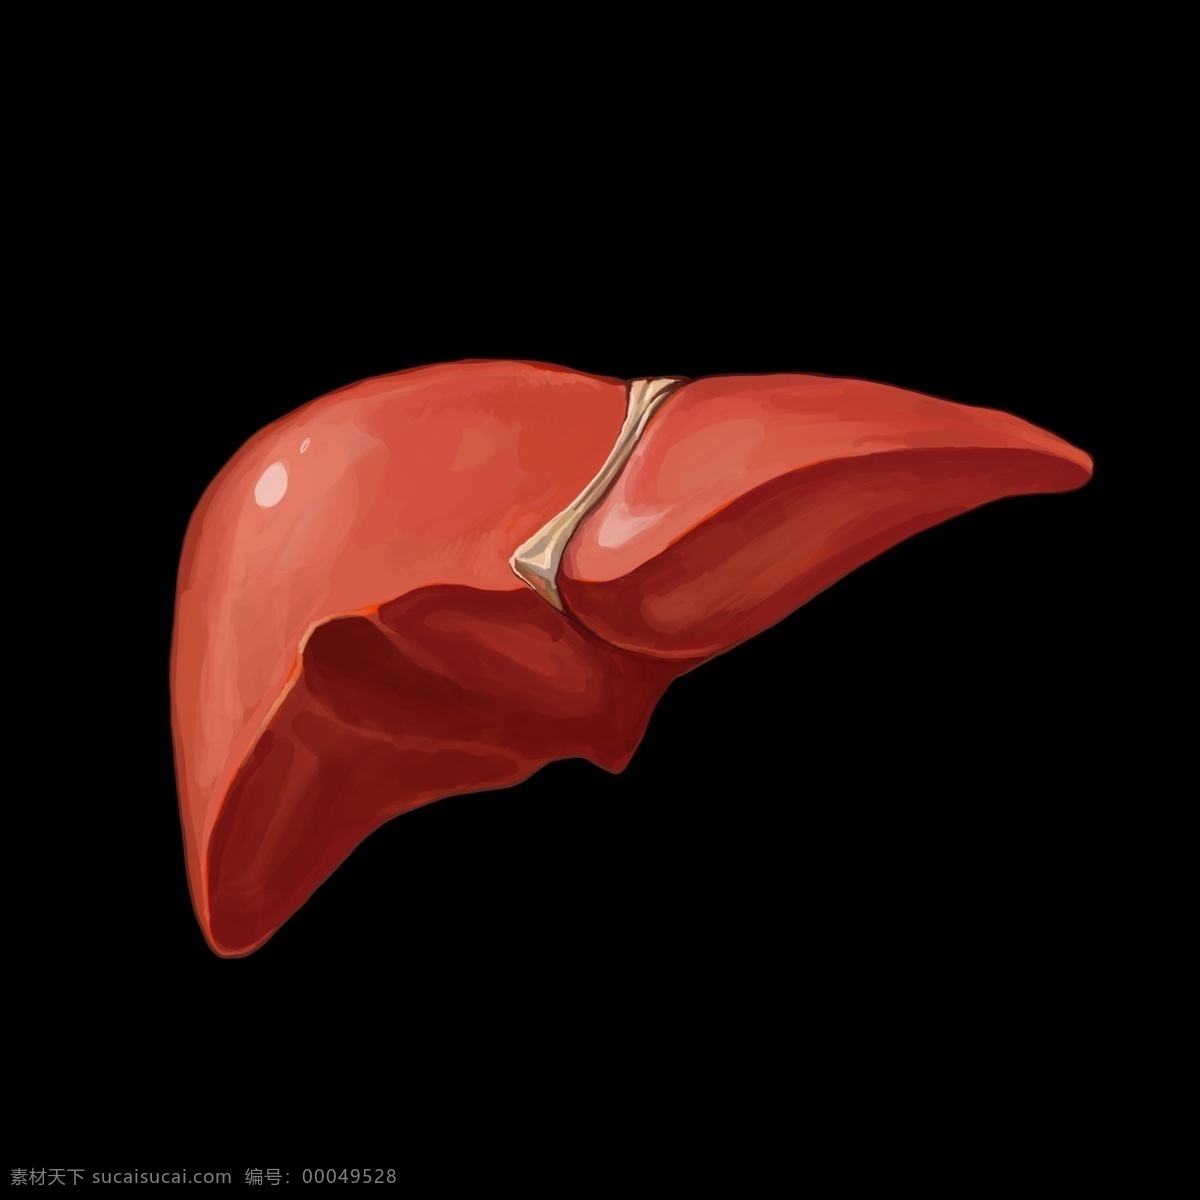 肺部 器官 卡通 插画 肺部的器官 卡通插画 器官插画 人体器官 身体部位 健康器官 移植的器官